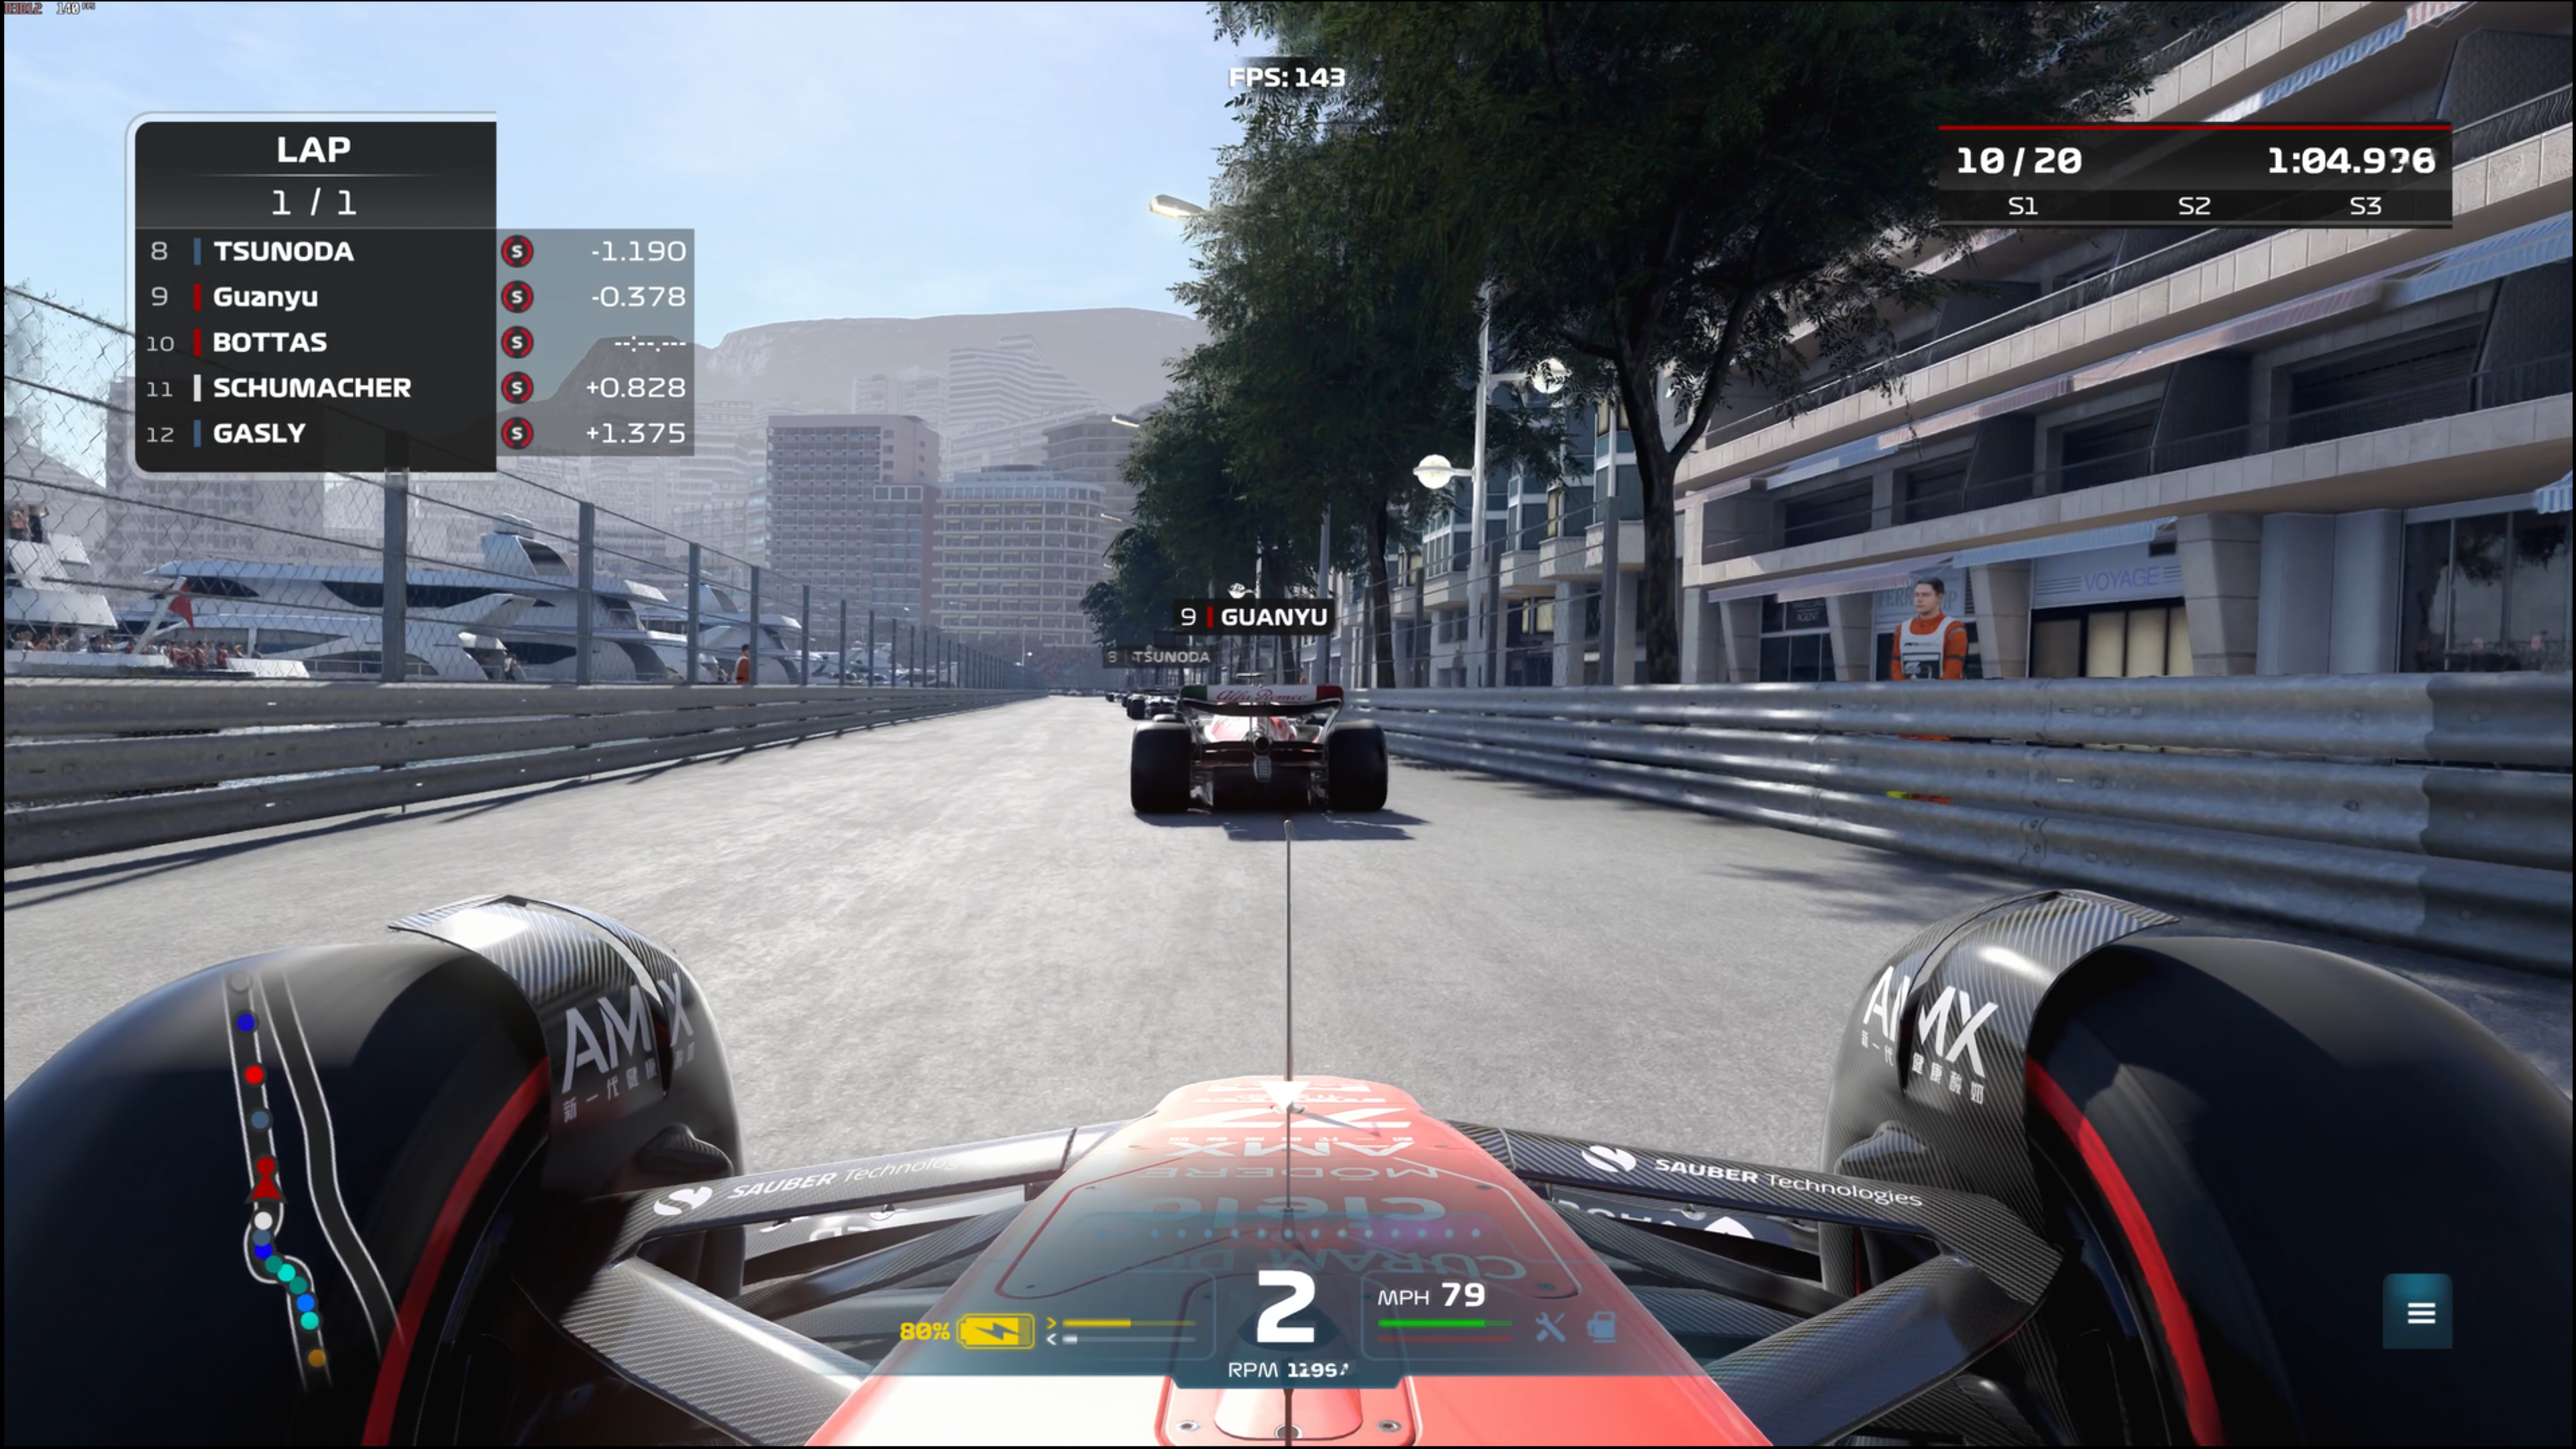 Сгенерированный искусственным интеллектом кадр DLSS 3 в F1 2022, показывающий гонку в Монако глазами водителя.